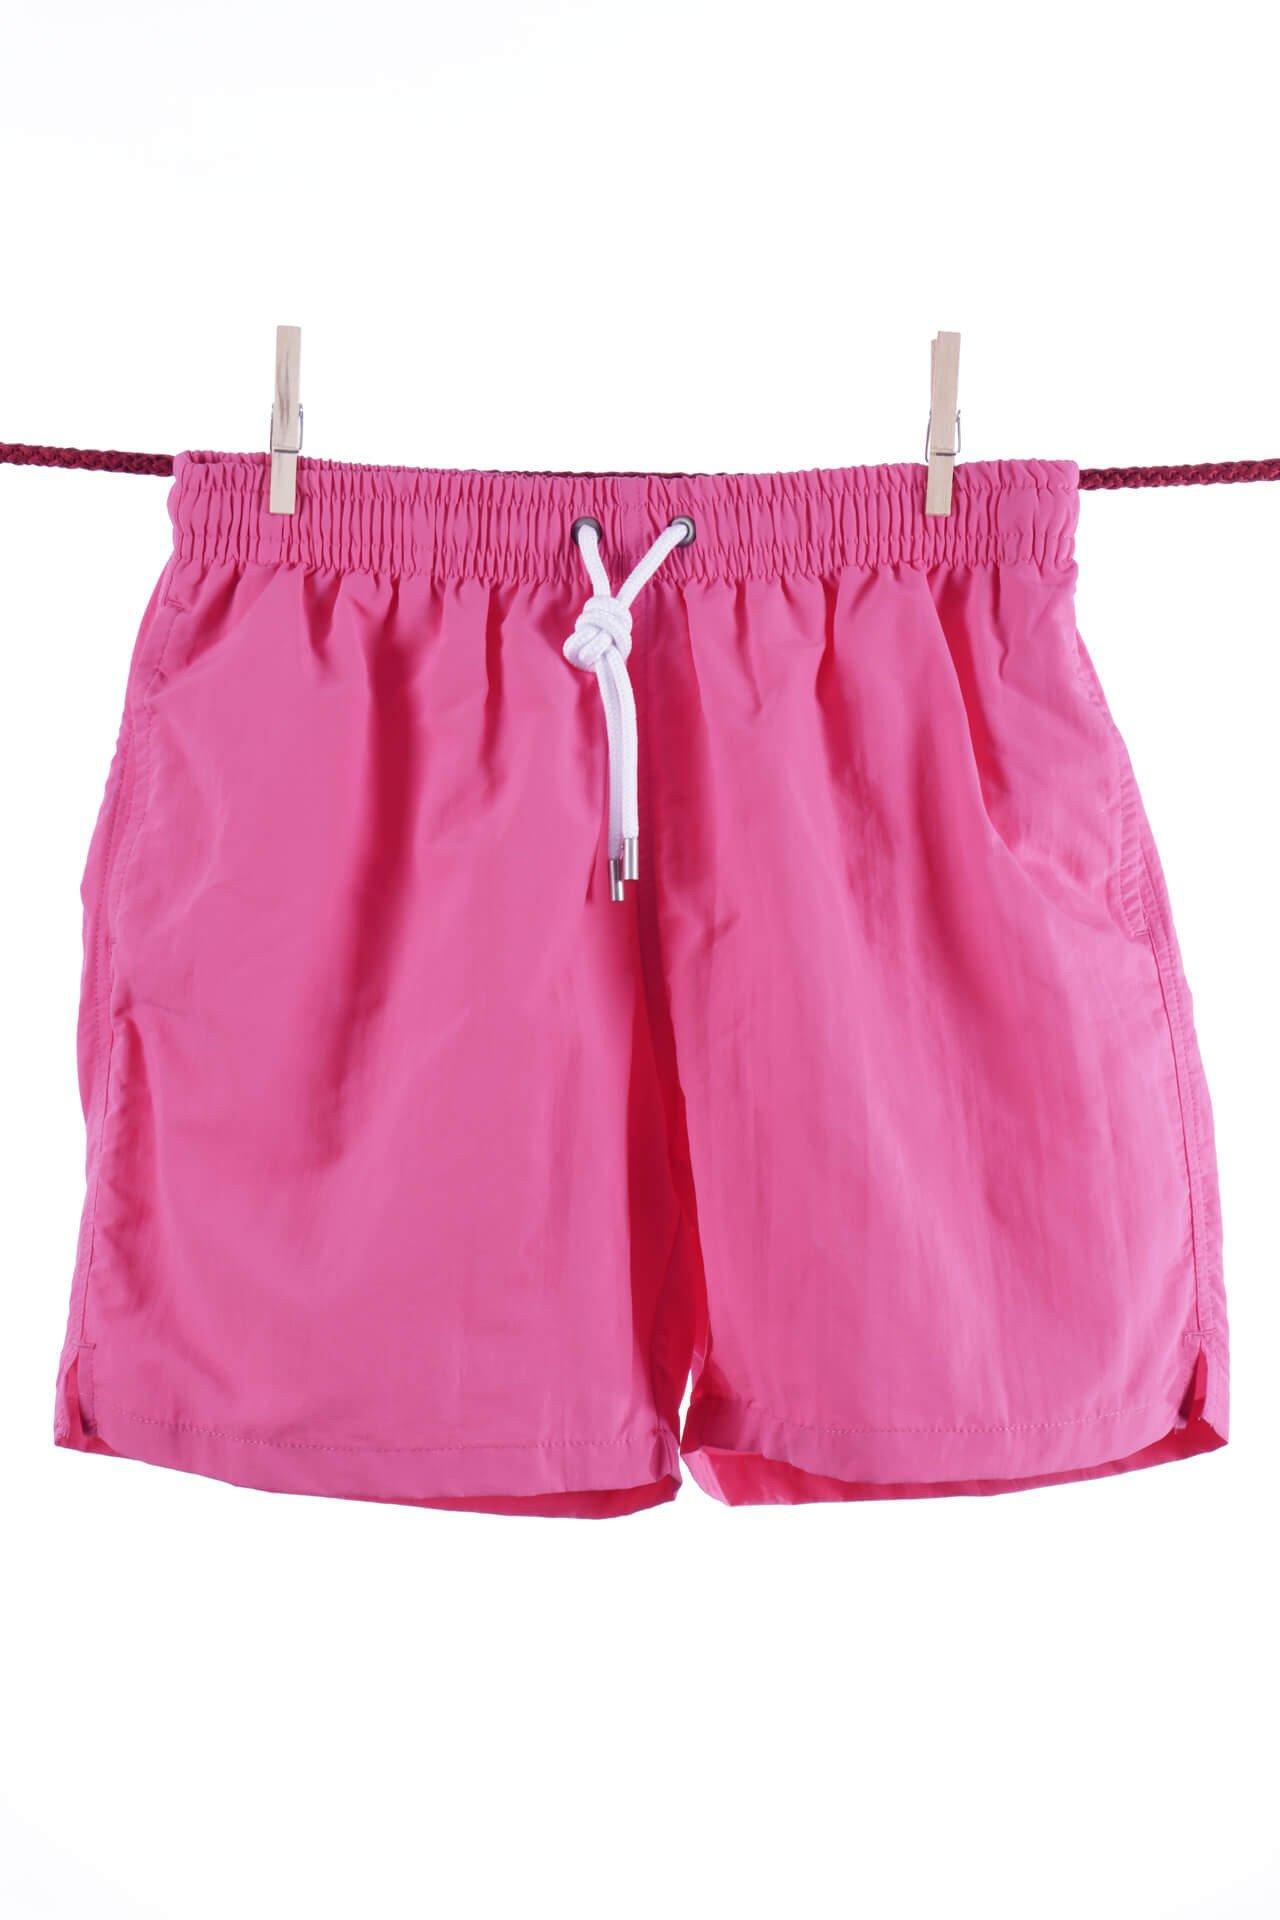 Einfarbige, Süße Badeshorts - Modell Ibiza Herren Pink XL von Atelier F&B